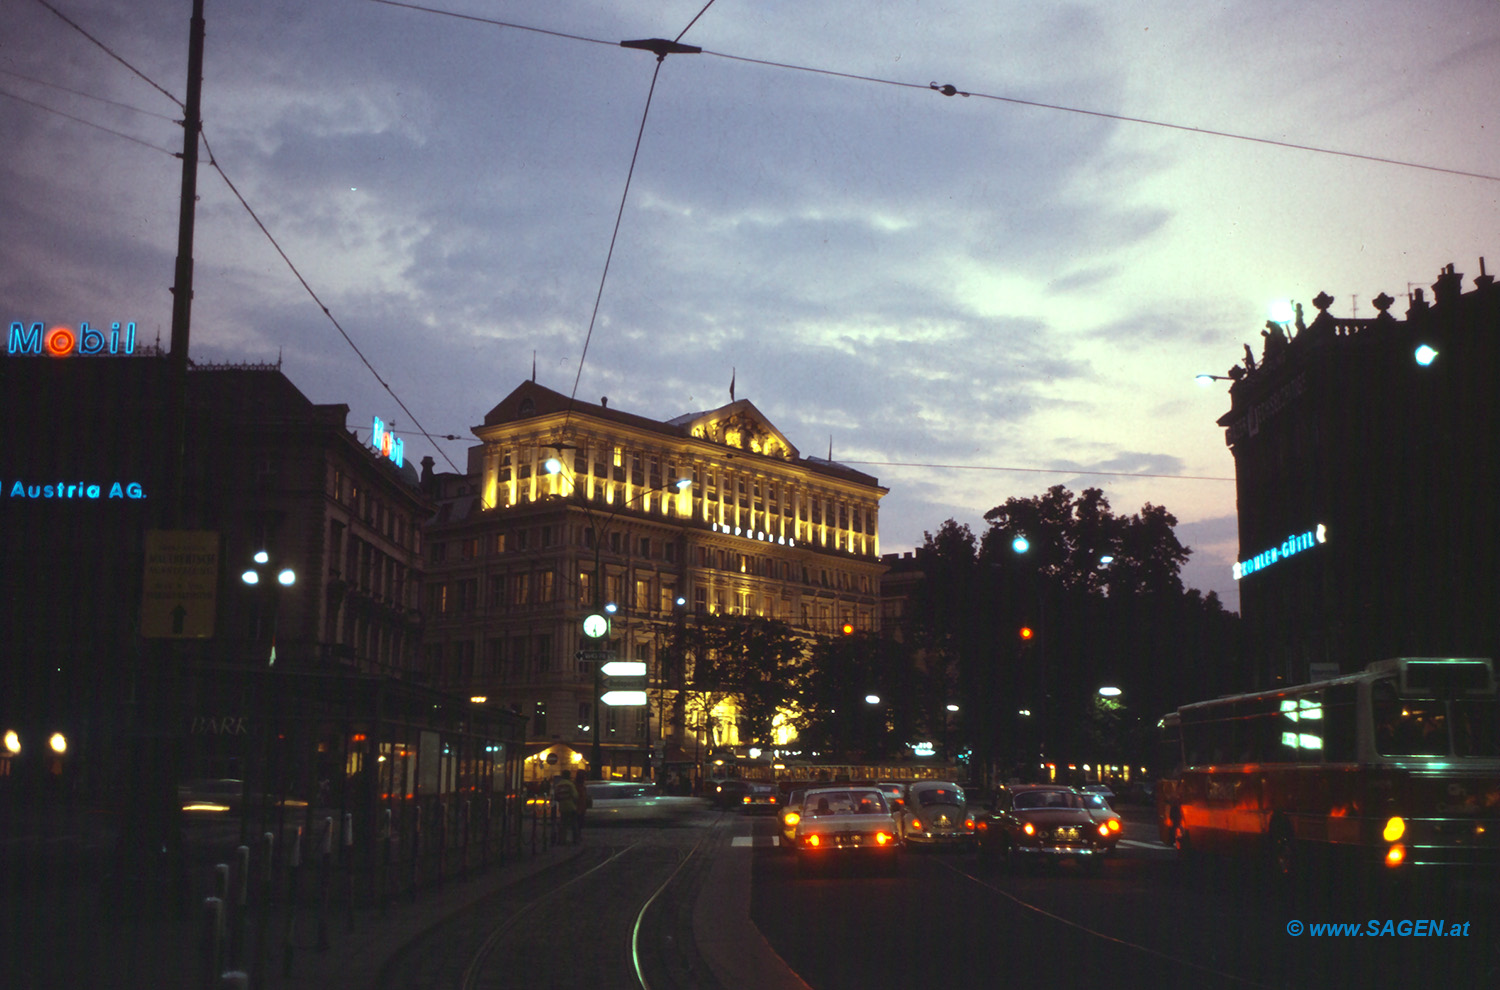 Wien Ringstraße Hotel Imperial am Abend